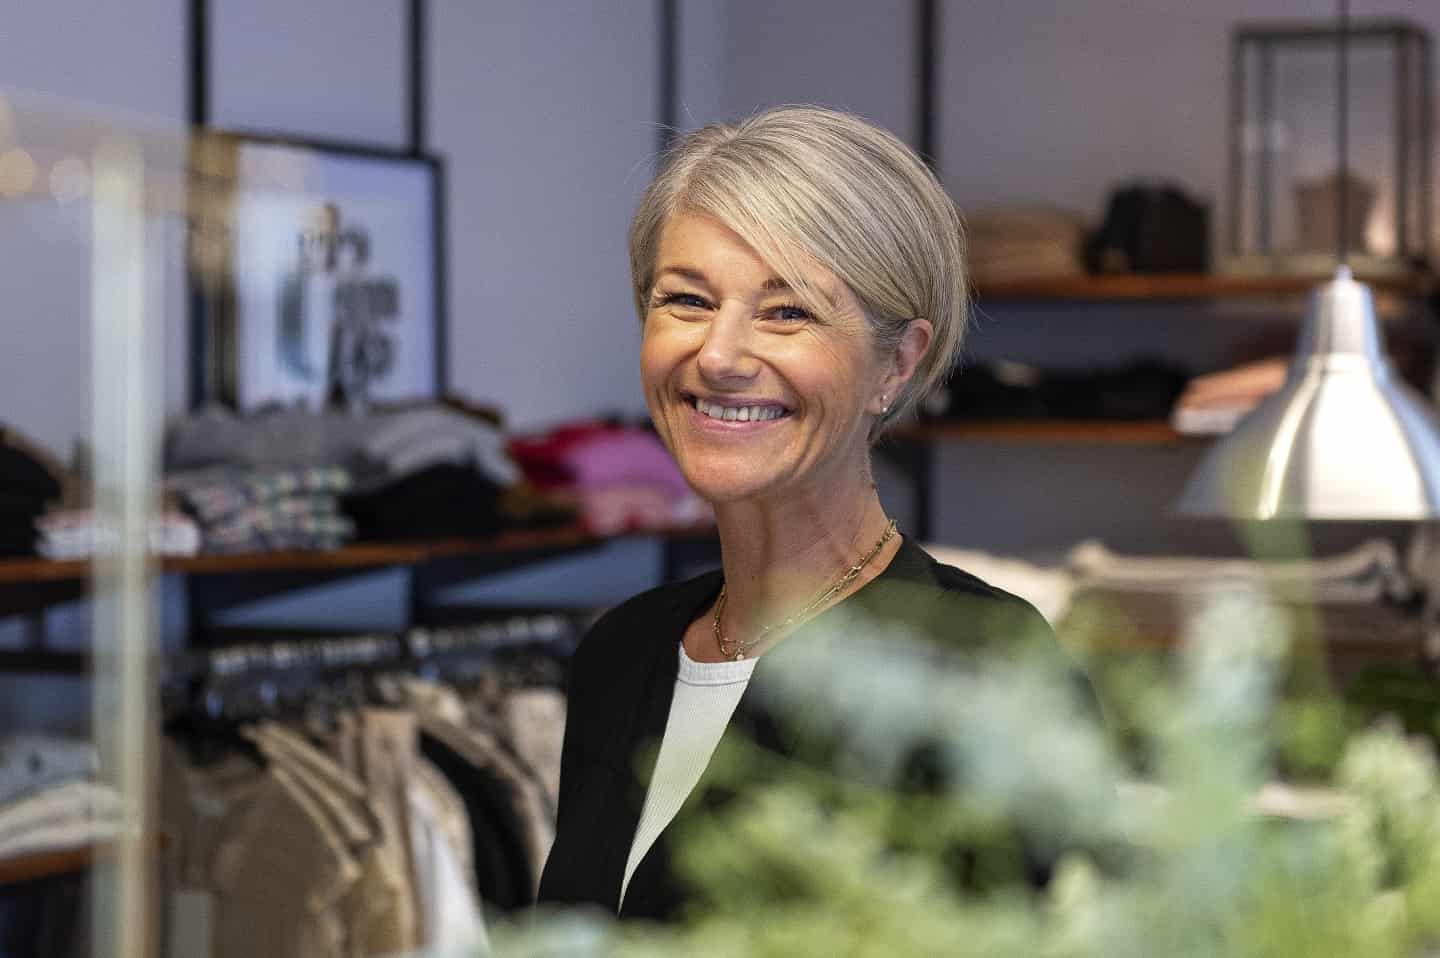 Modebutik i Hedensted er Gazelle for fjerde år streg | ugeavisen.dk